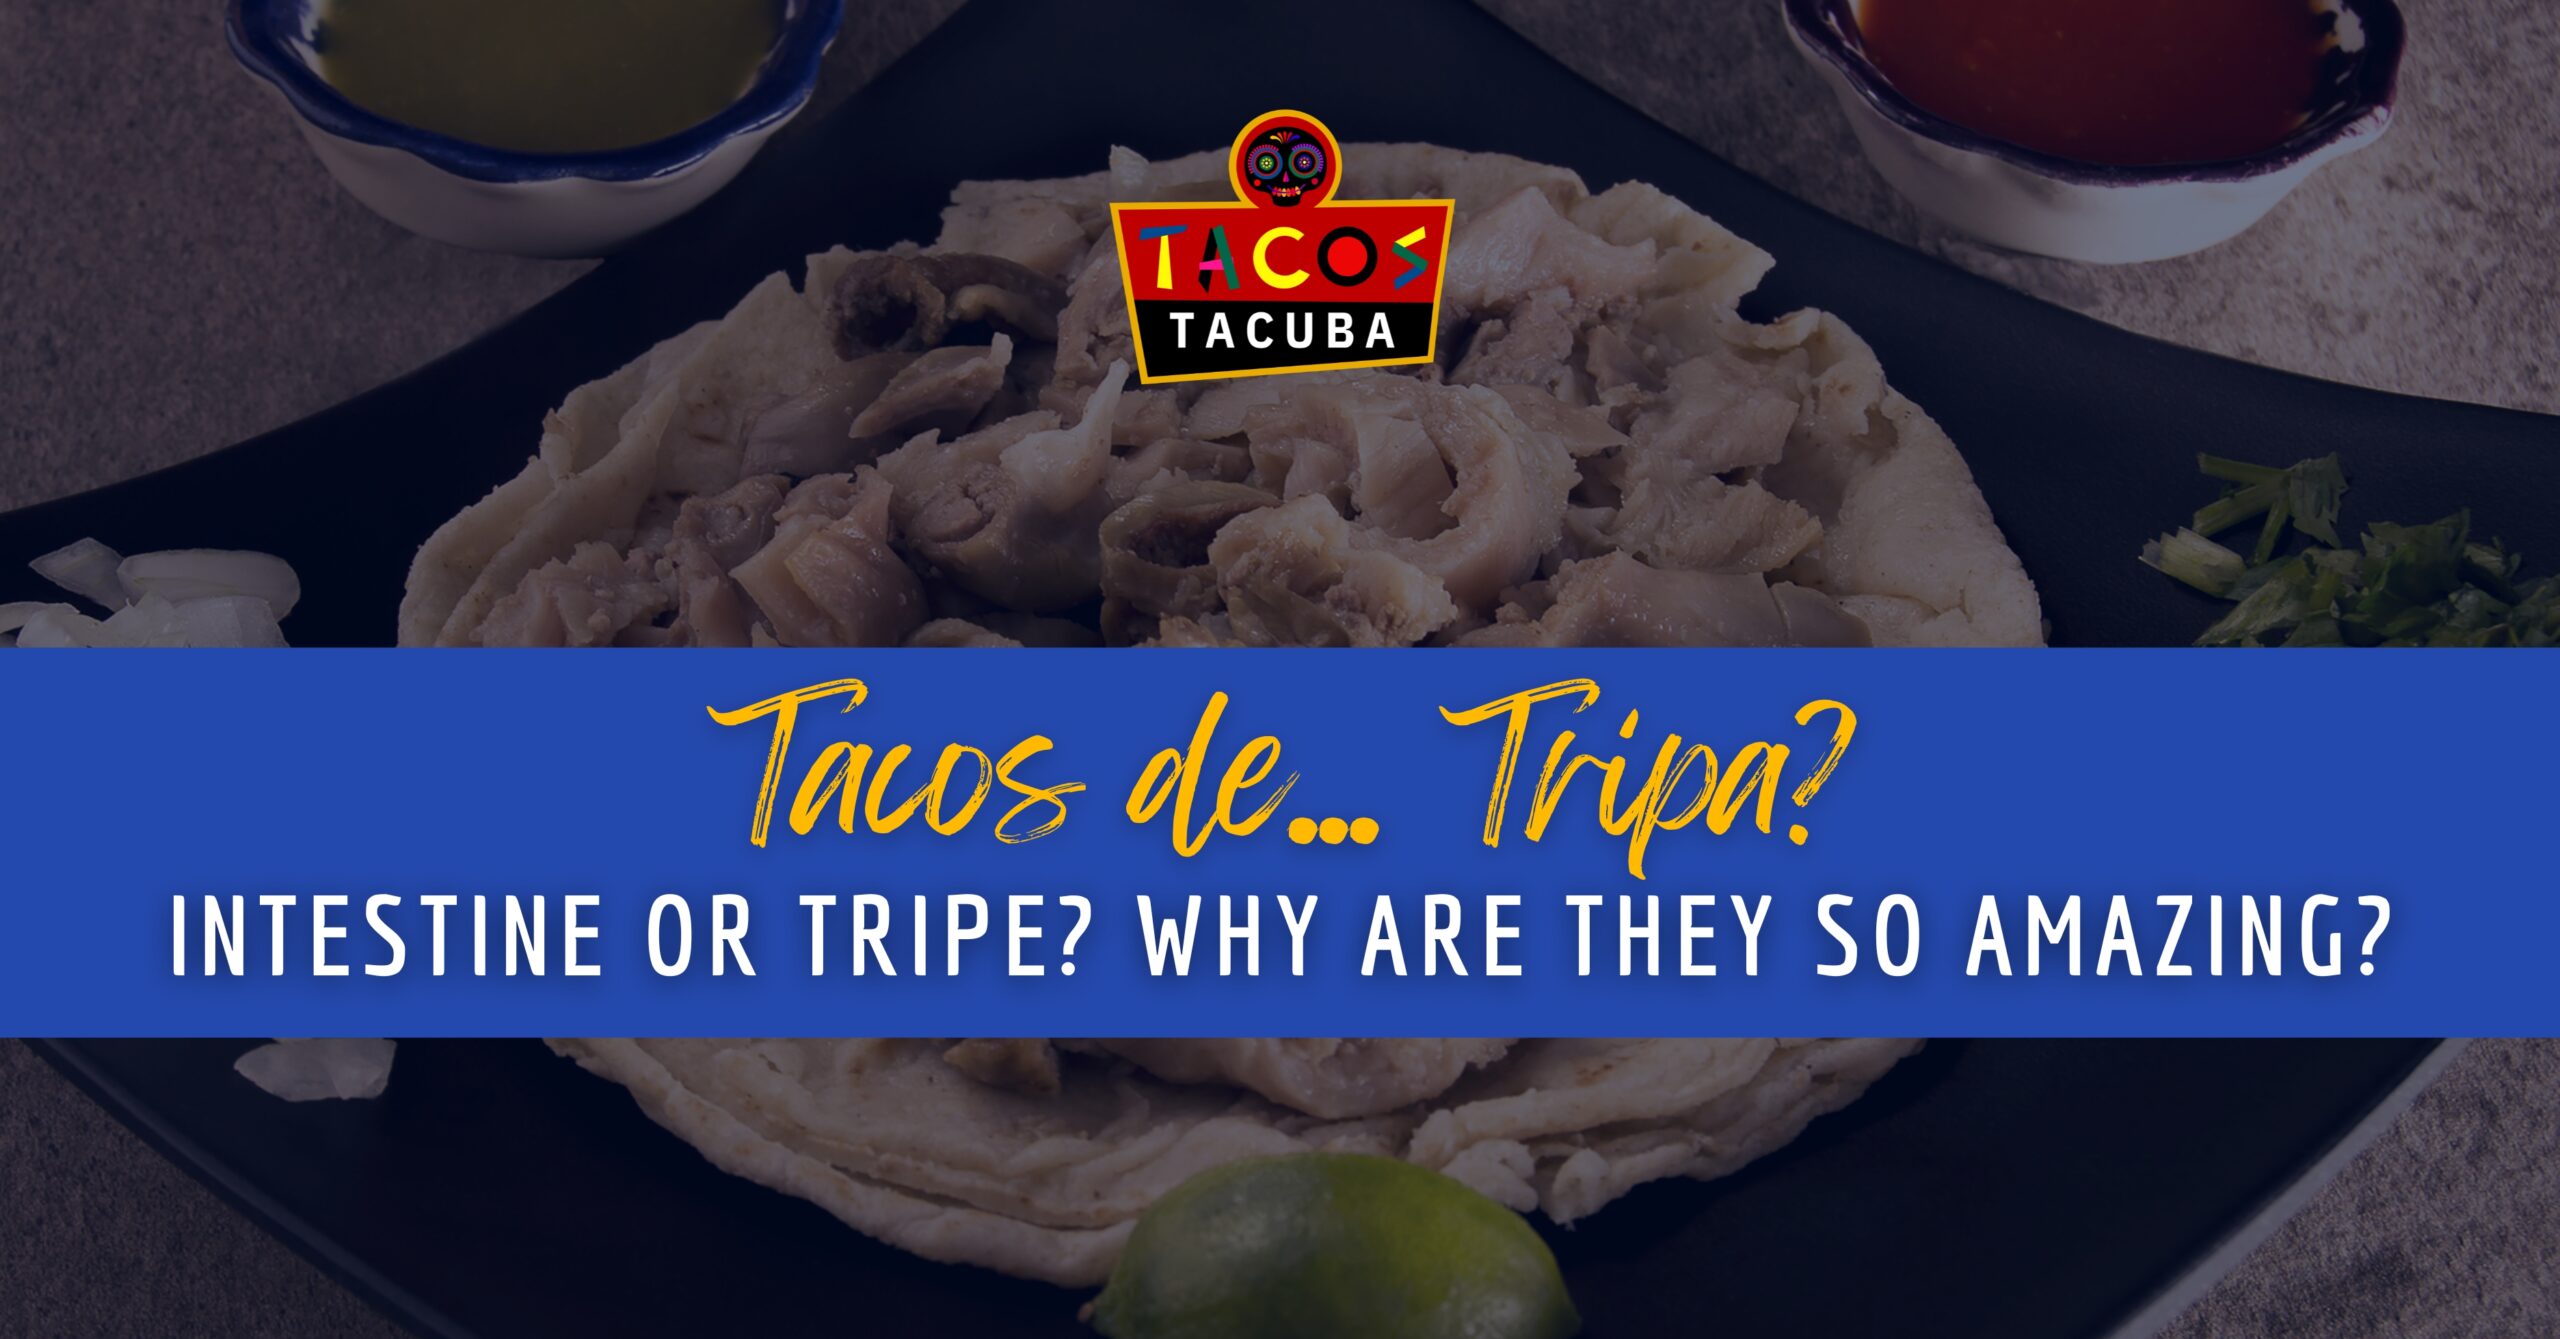 Tacos de Tripa-Tacos tacuba